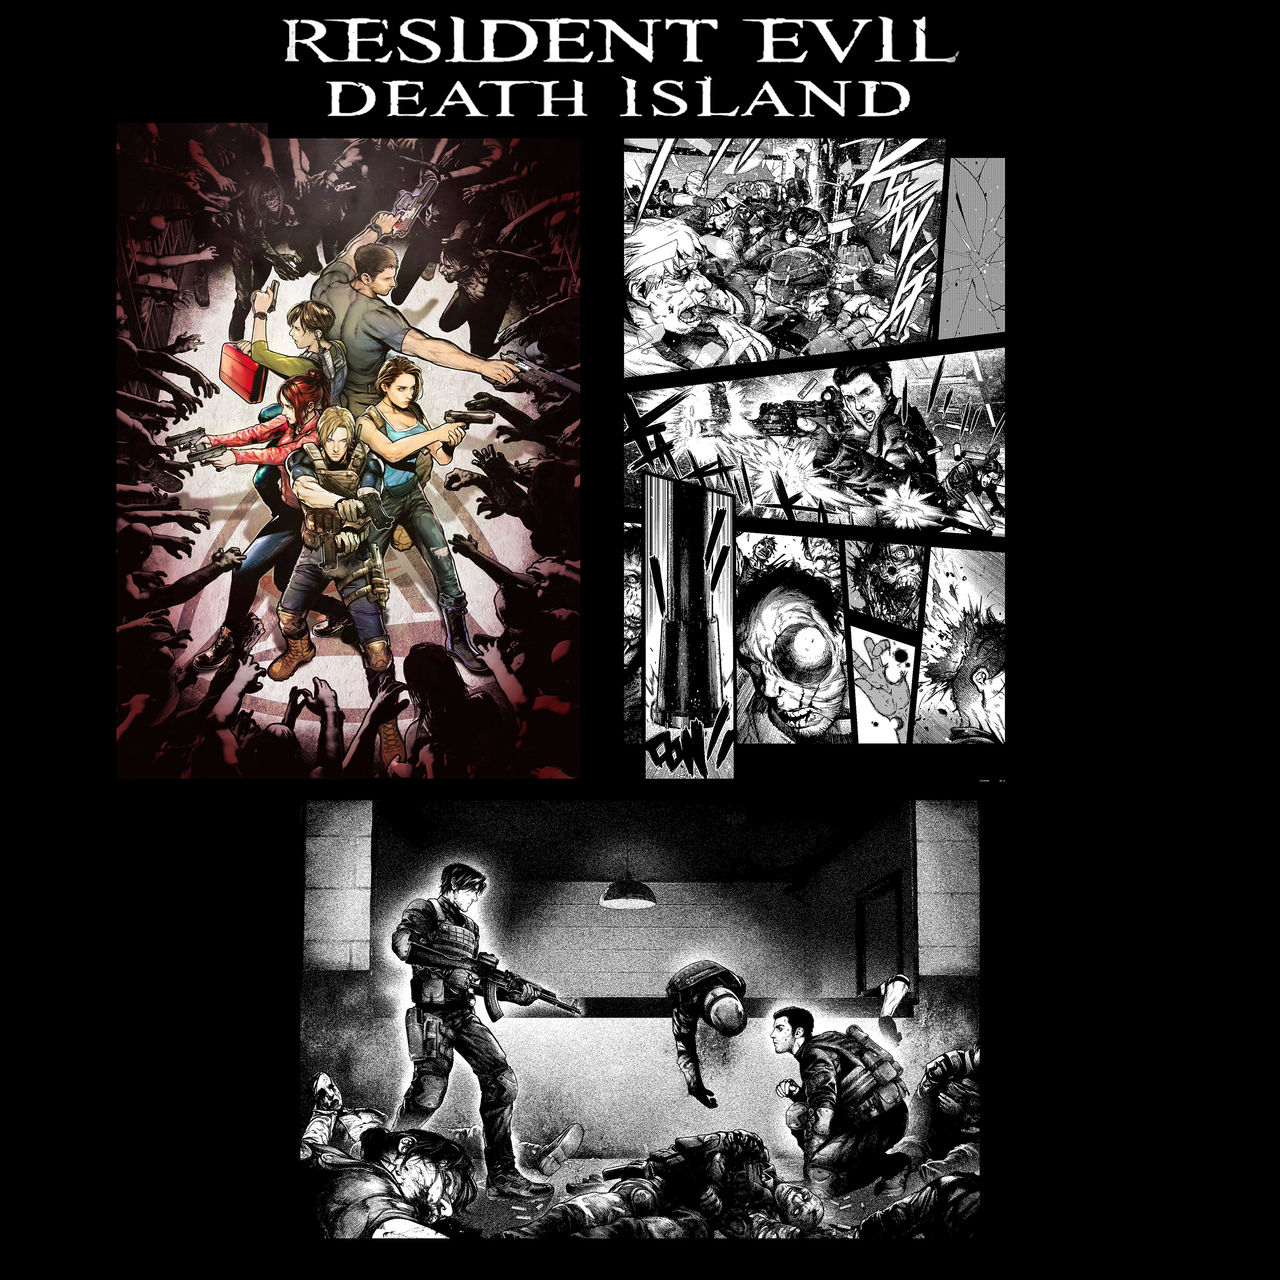 Resident Evil Code: Veronica Remake by gabrielpxt on DeviantArt